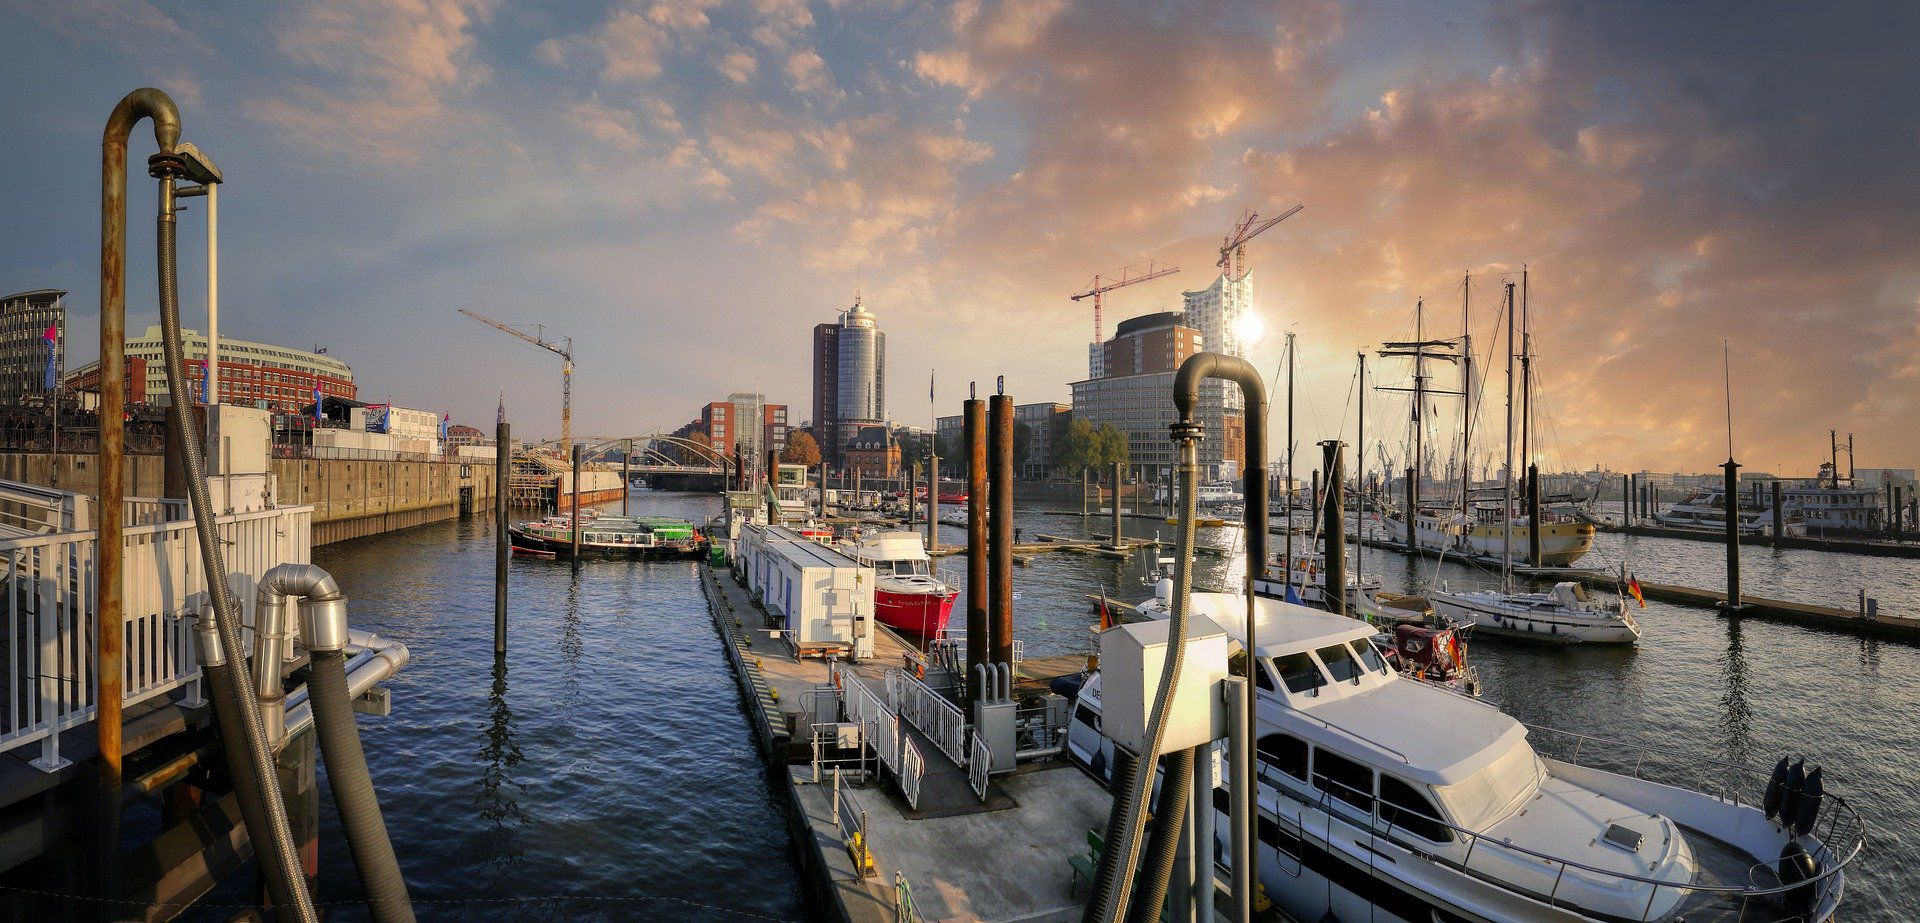 Der Hafen mit Sportbooten und der Elbphilharmonie im Hintergrund symbolisieren Hamburg.